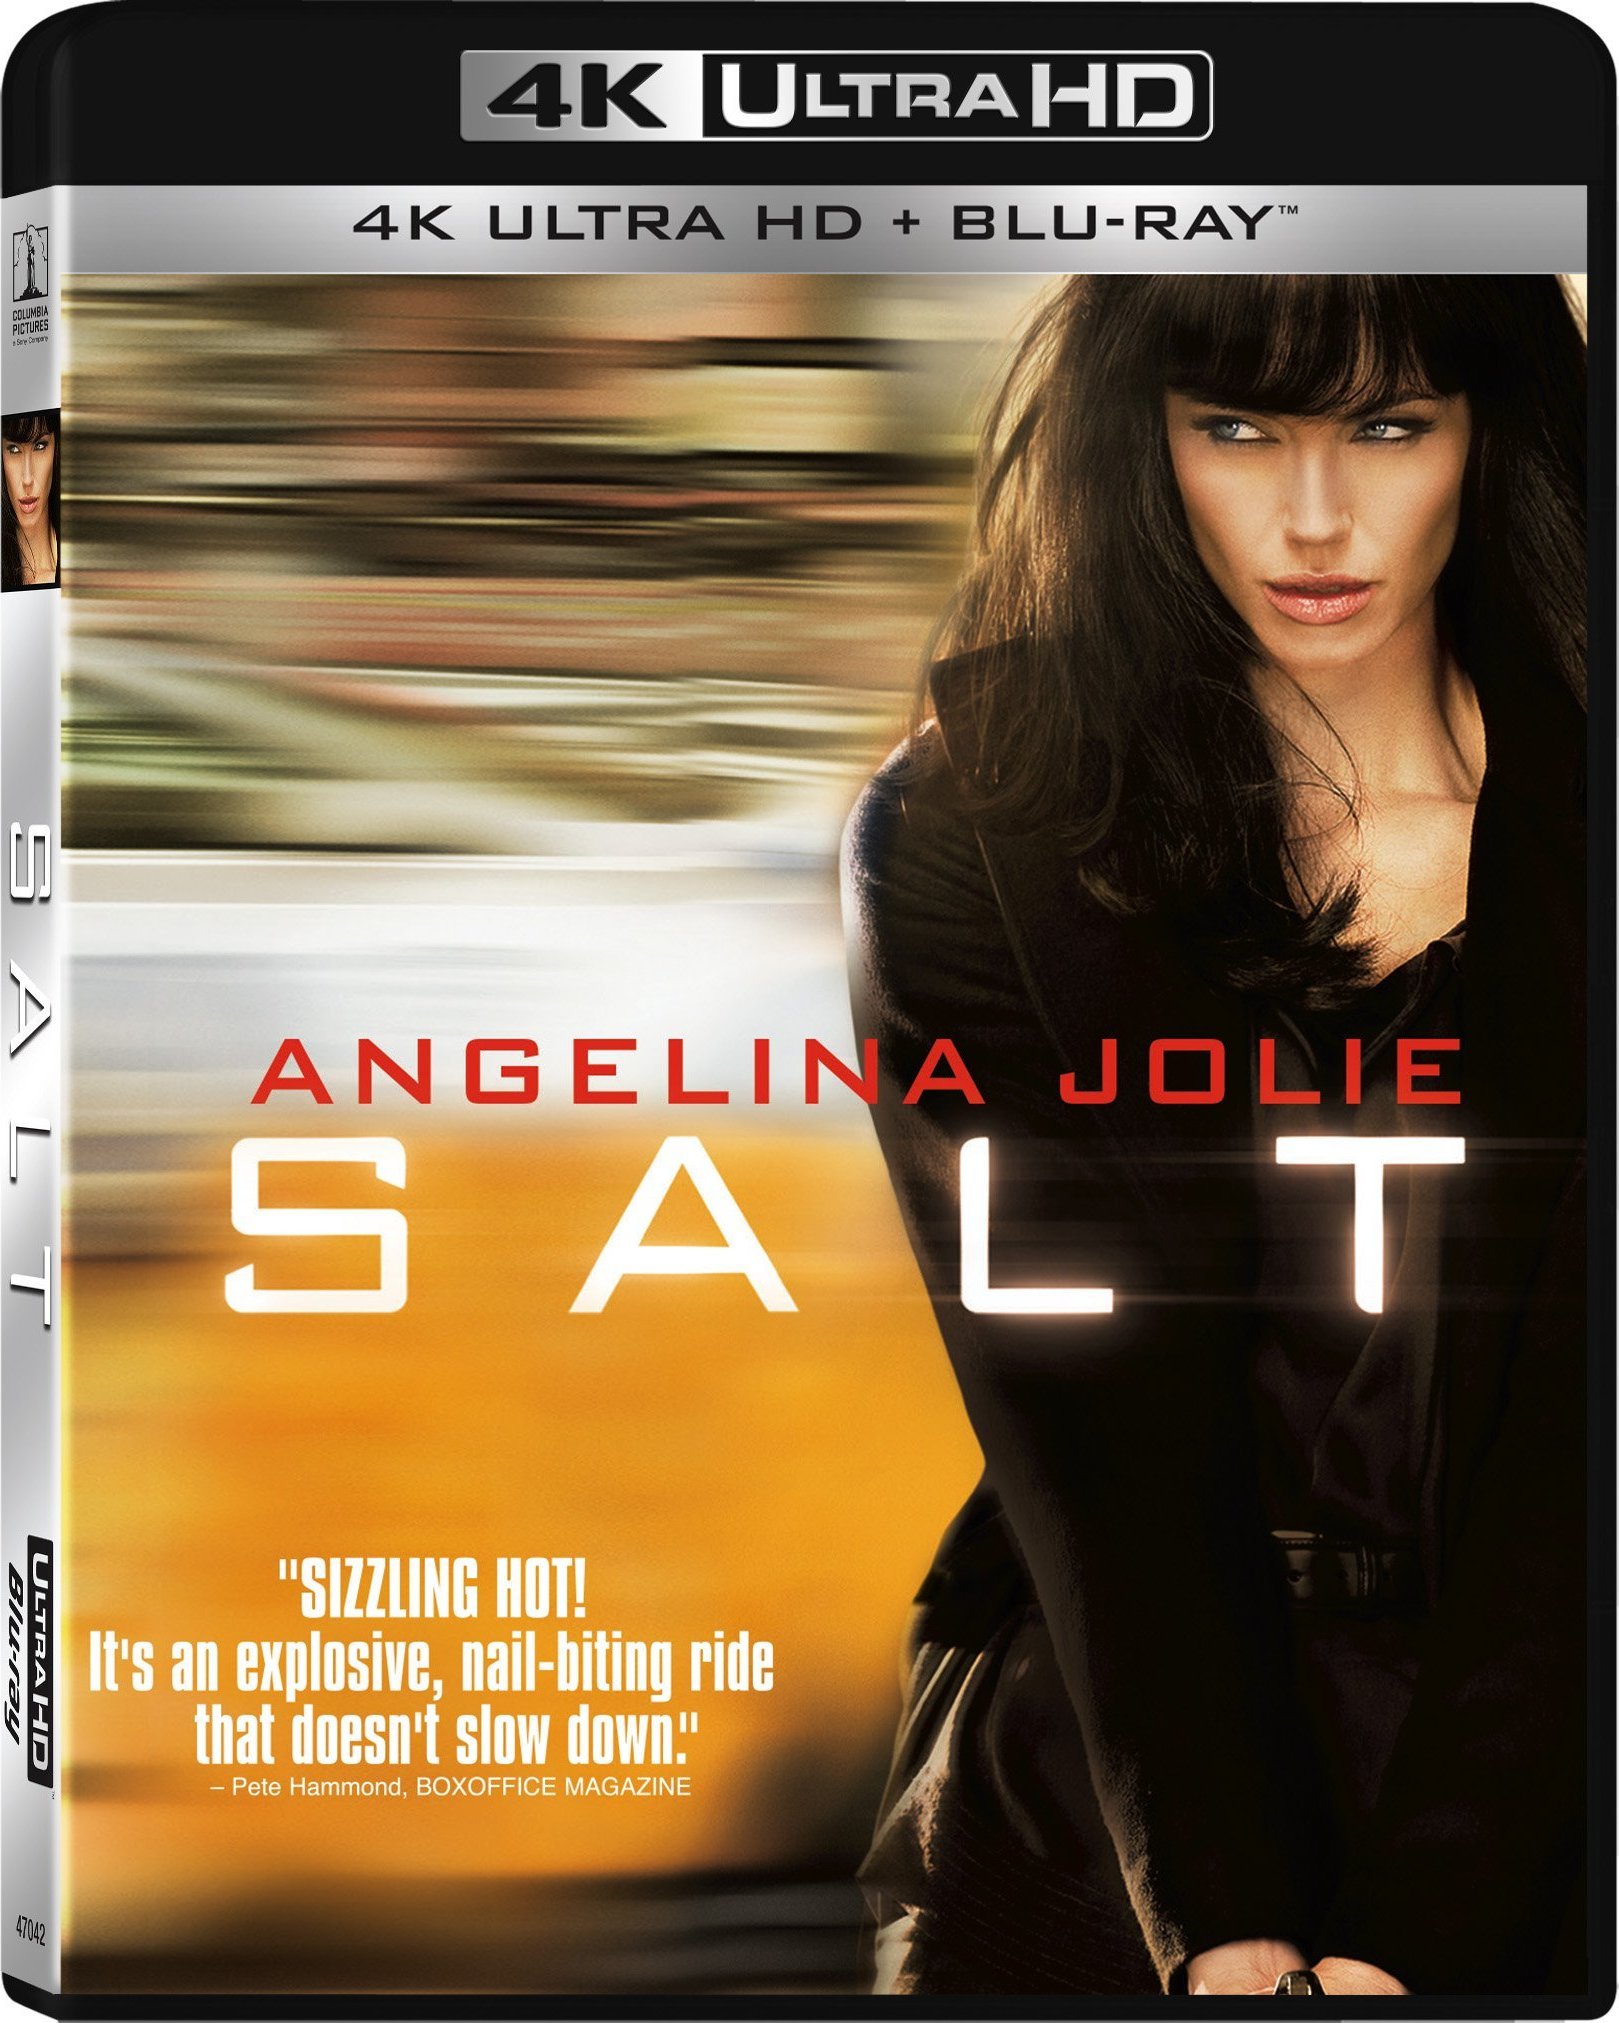 特工绍特/叛谍狂花 英语 英简繁SUP字幕 Salt 2010 UHD BluRay 2160p TrueHD Atmos 7 1 x265.10bit HDR-BeiTai